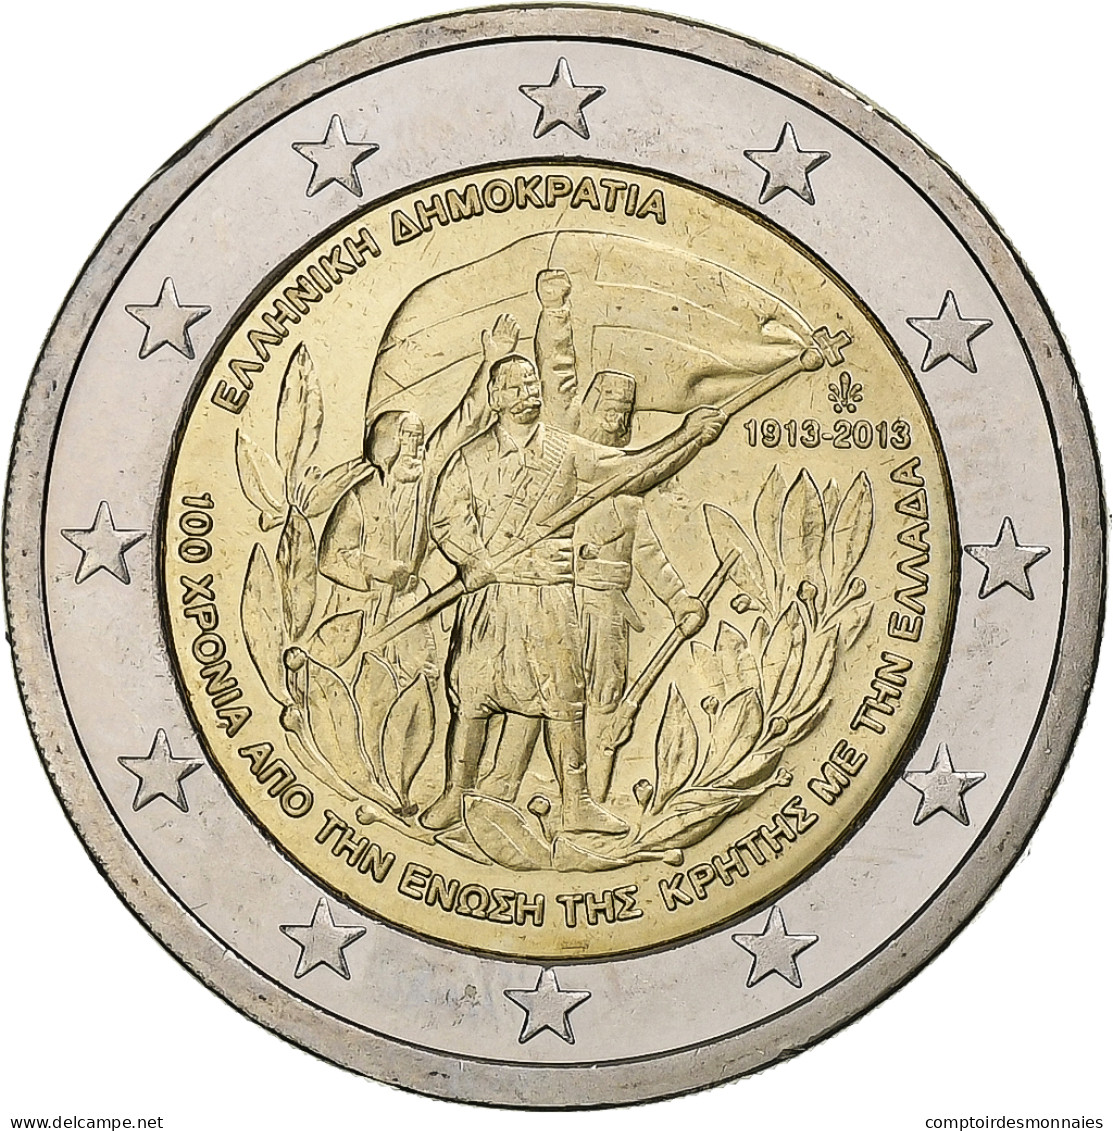 Grèce, 2 Euro, Crète - Grèce, 2013, Athènes, SUP, Bimétallique - Griechenland